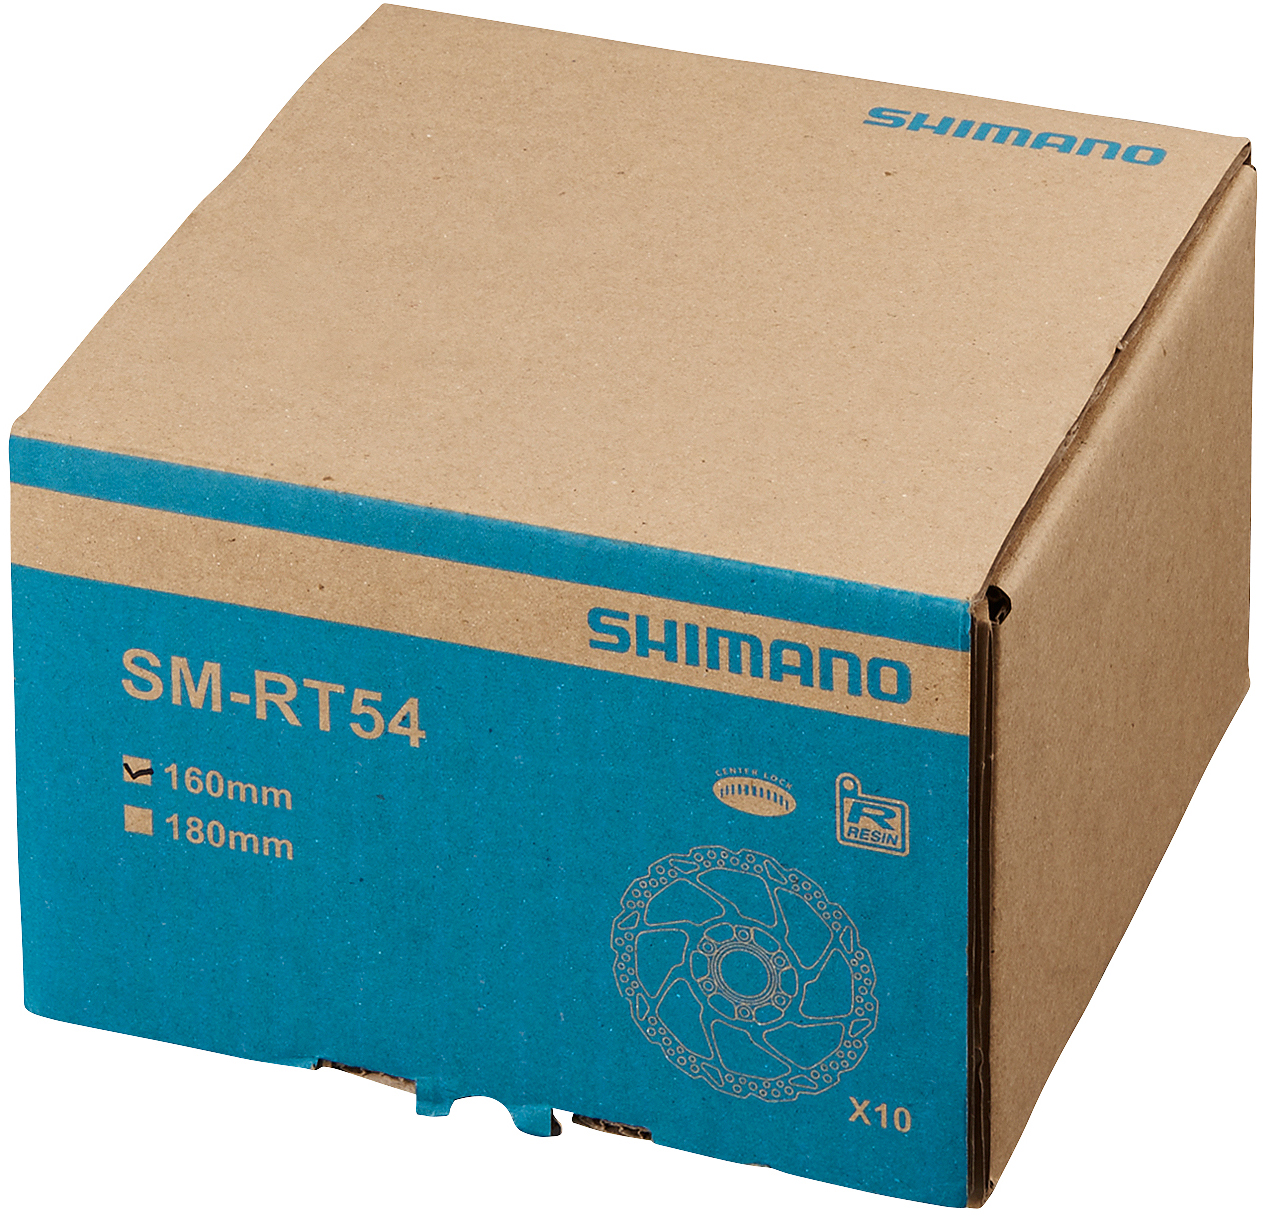 SHIMANO brzdový kotuč DEORE SM-RT54 center lock 160 mm bez lock ring pouze pro resin des. set 10 ks